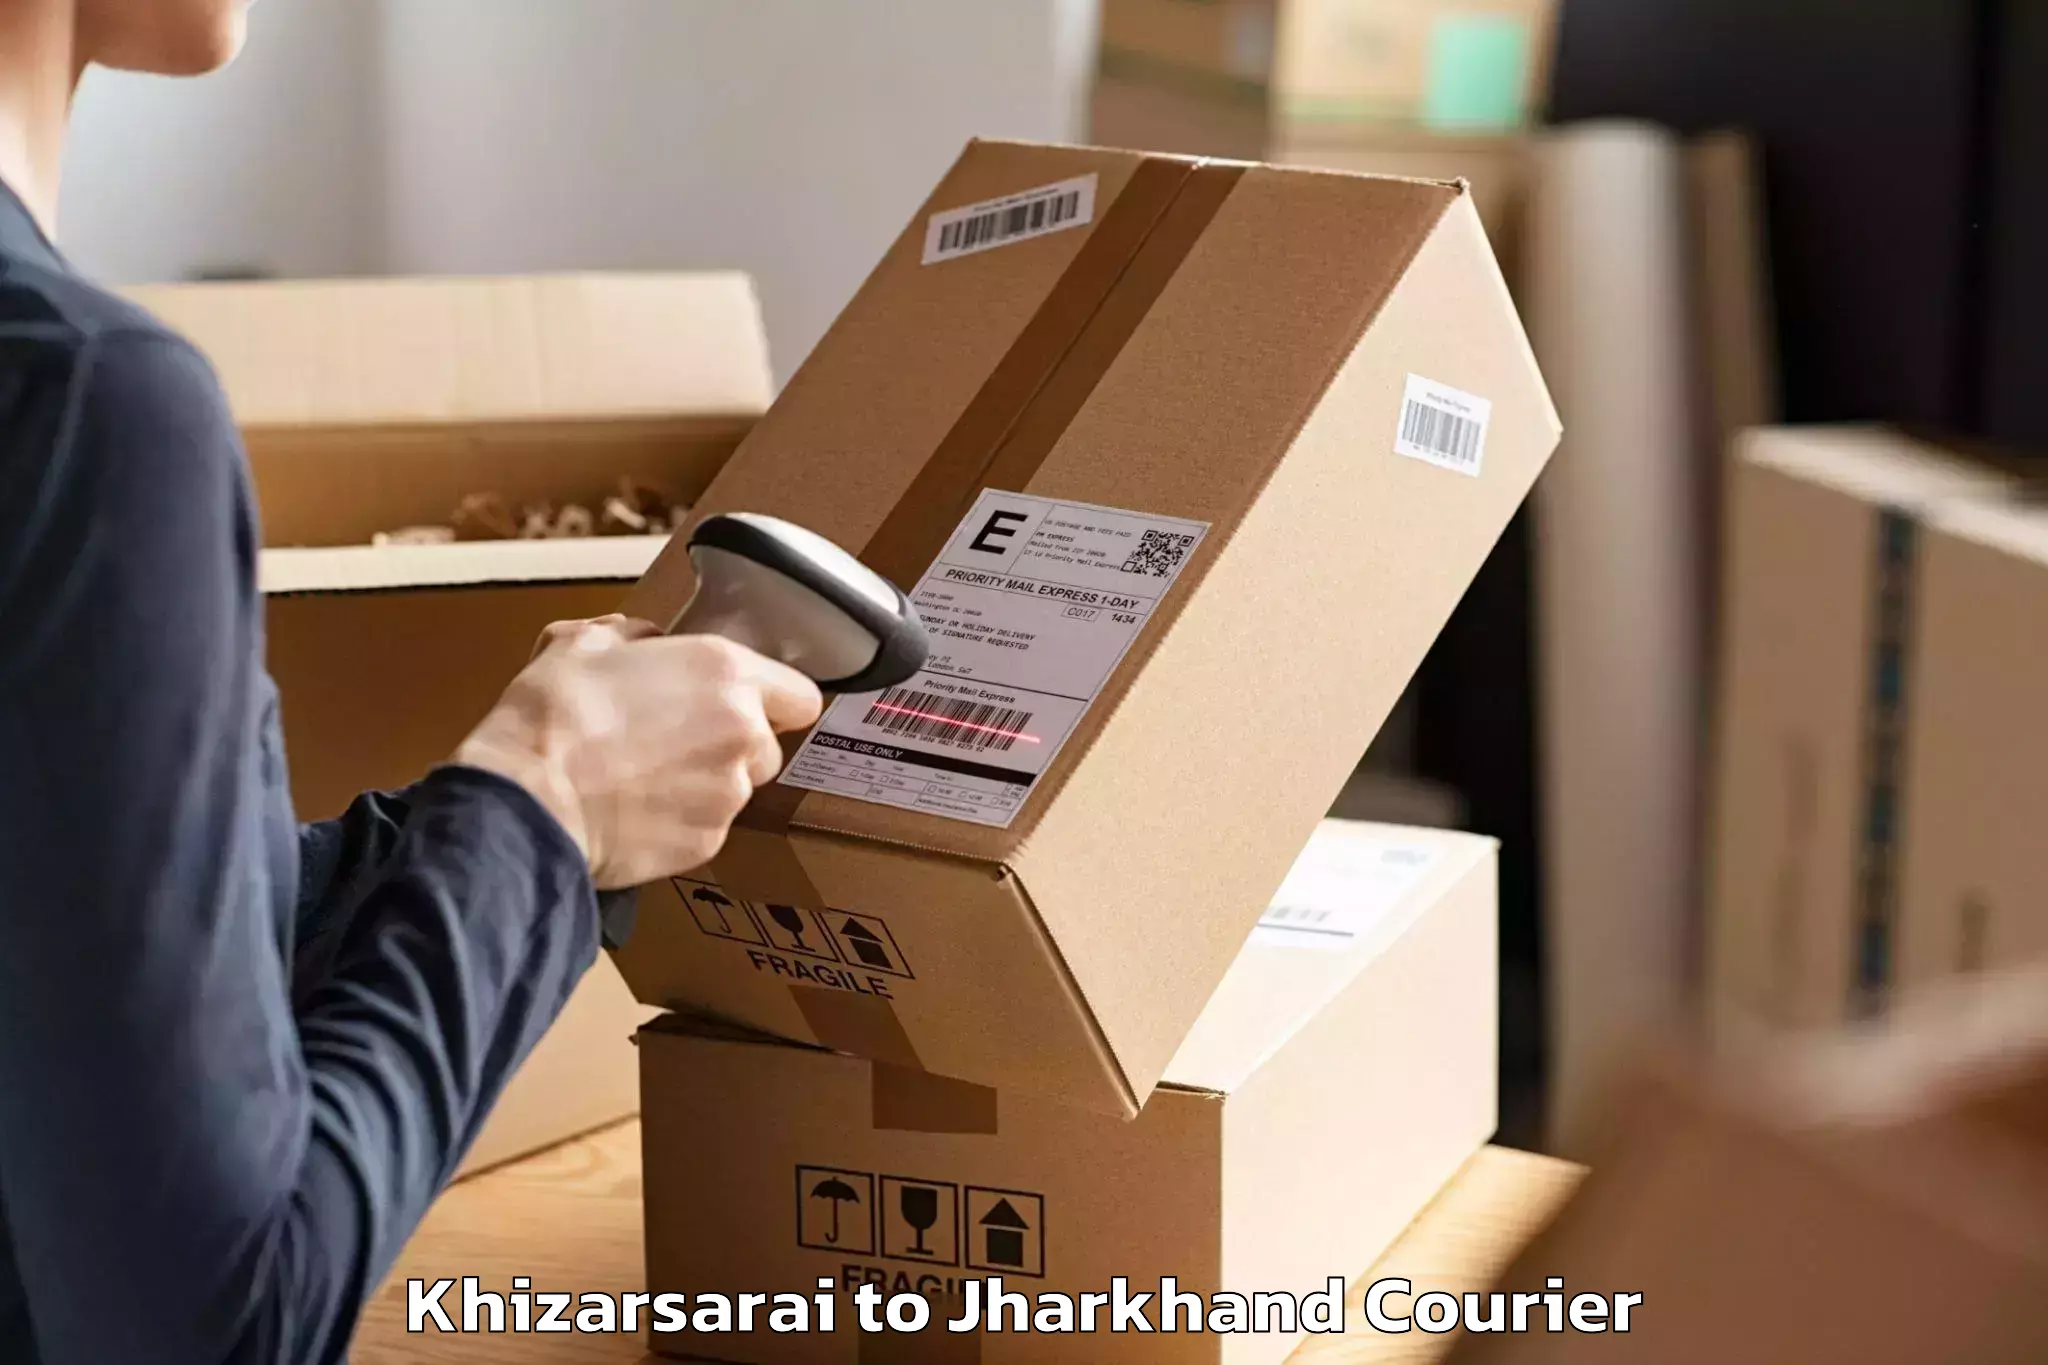 Professional moving company Khizarsarai to Jharia